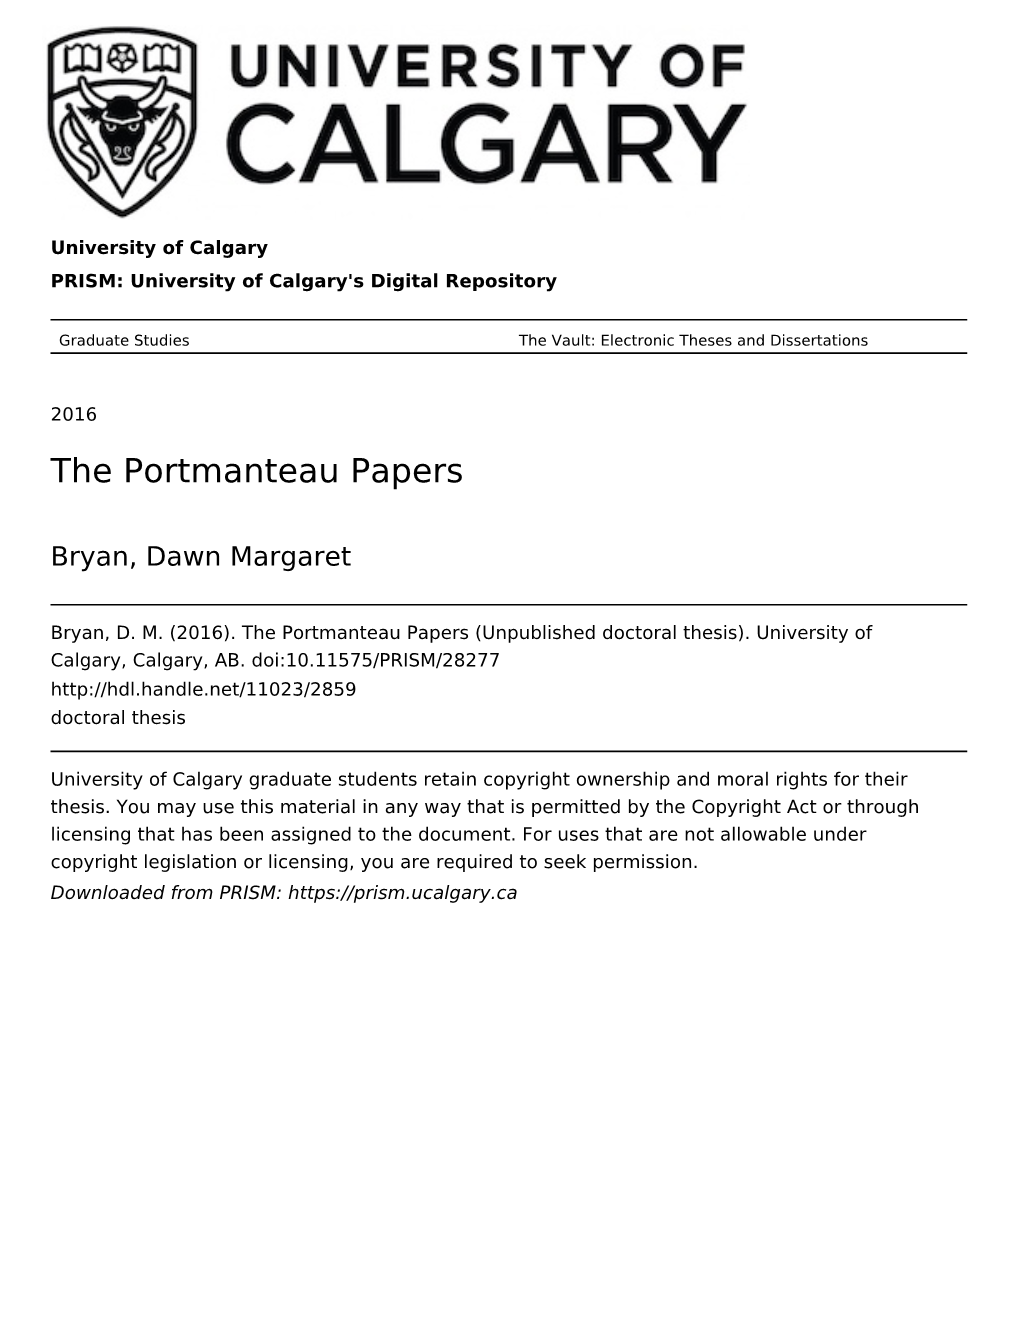 The Portmanteau Papers